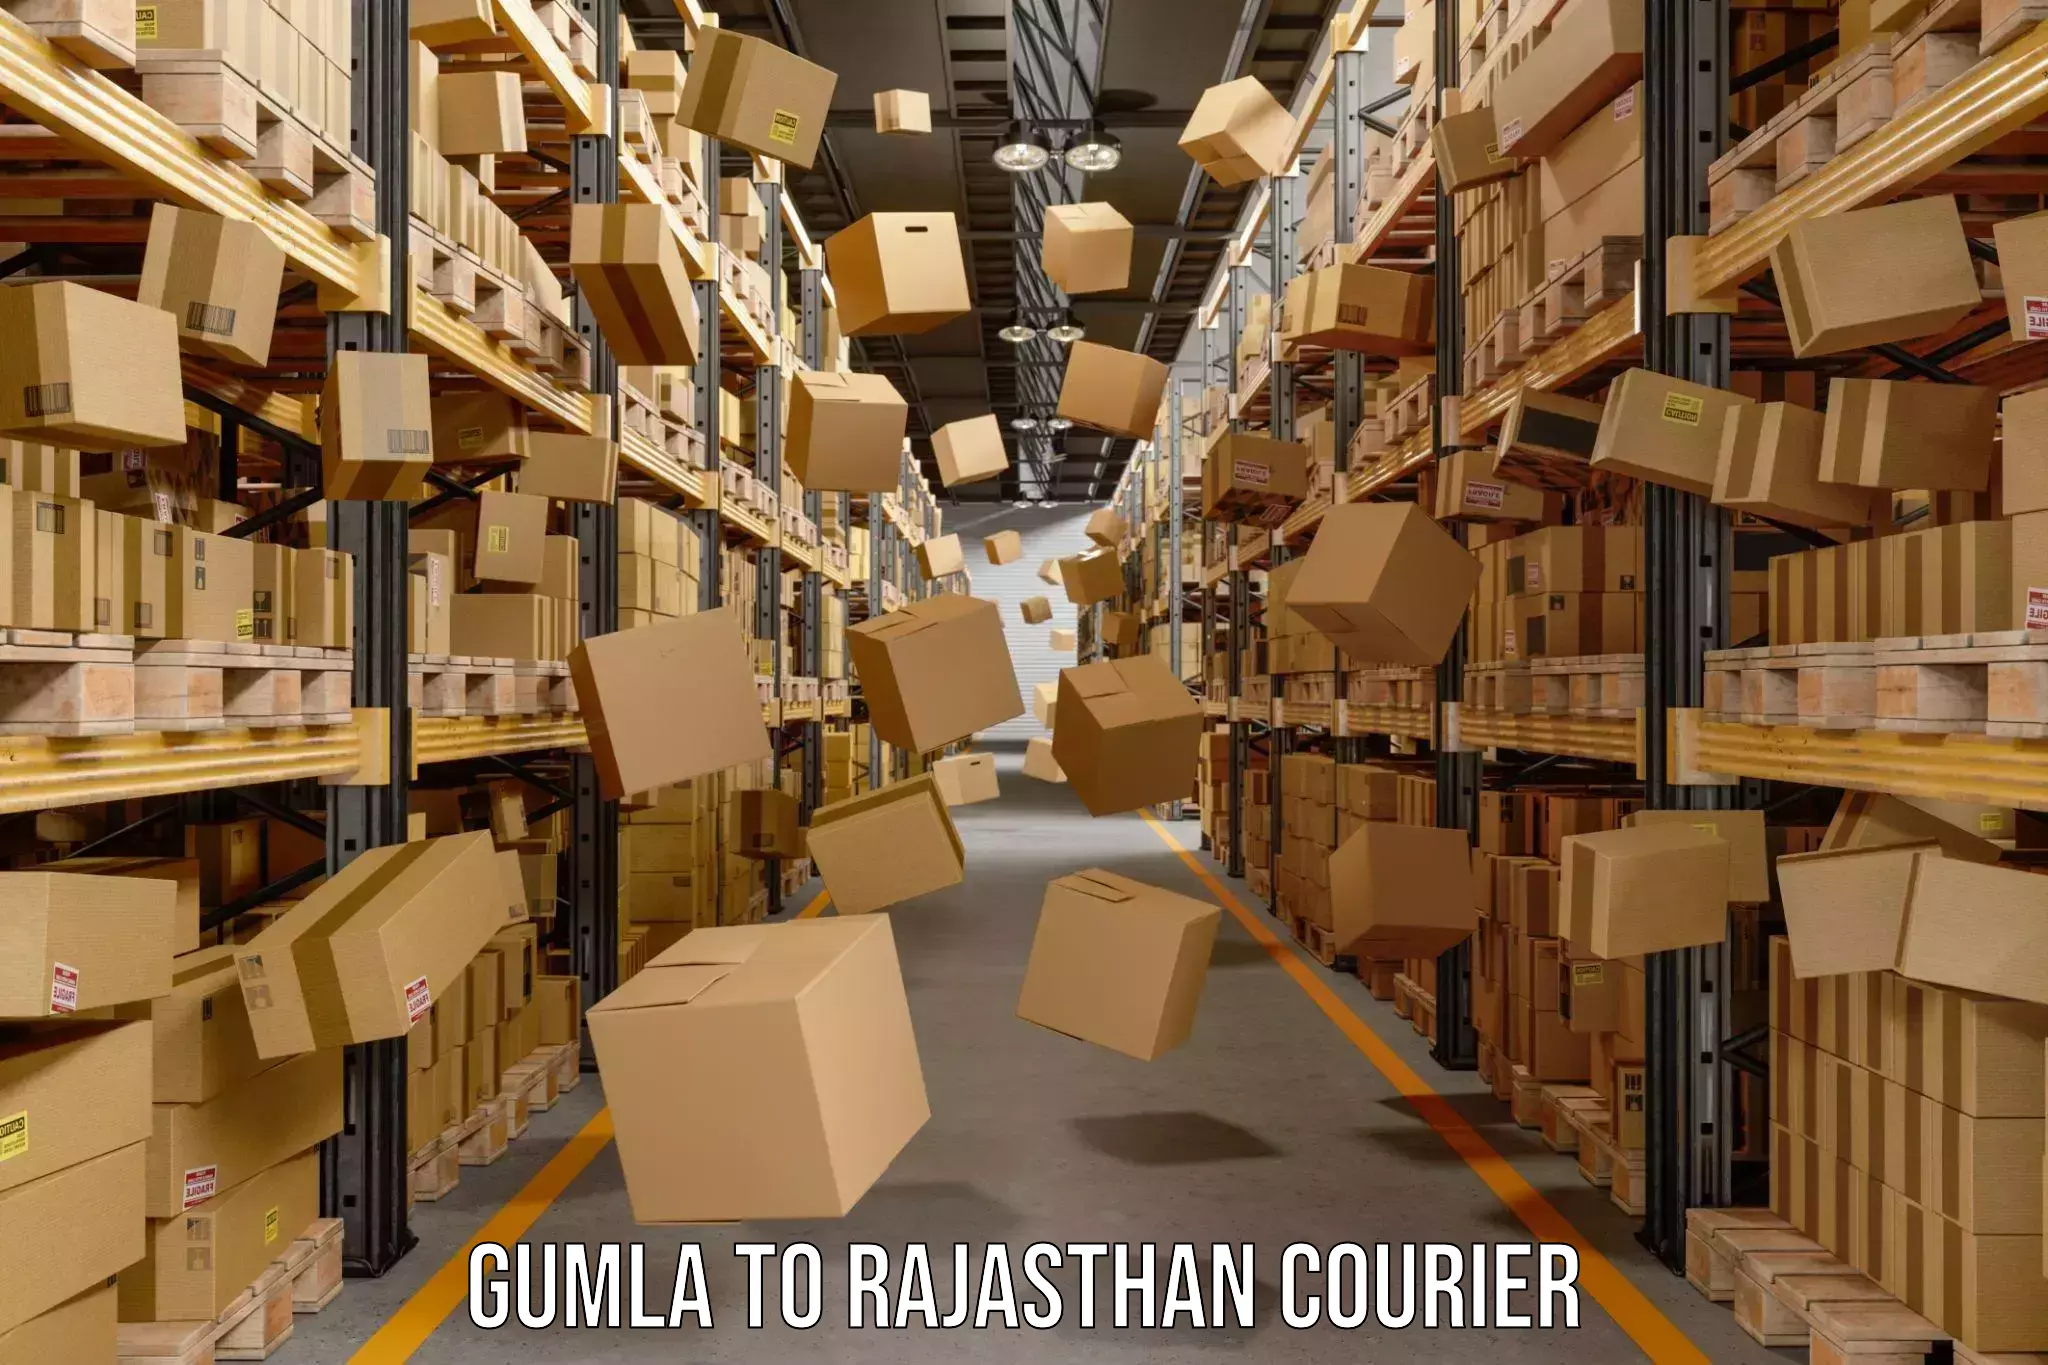 Courier service comparison Gumla to Gogunda